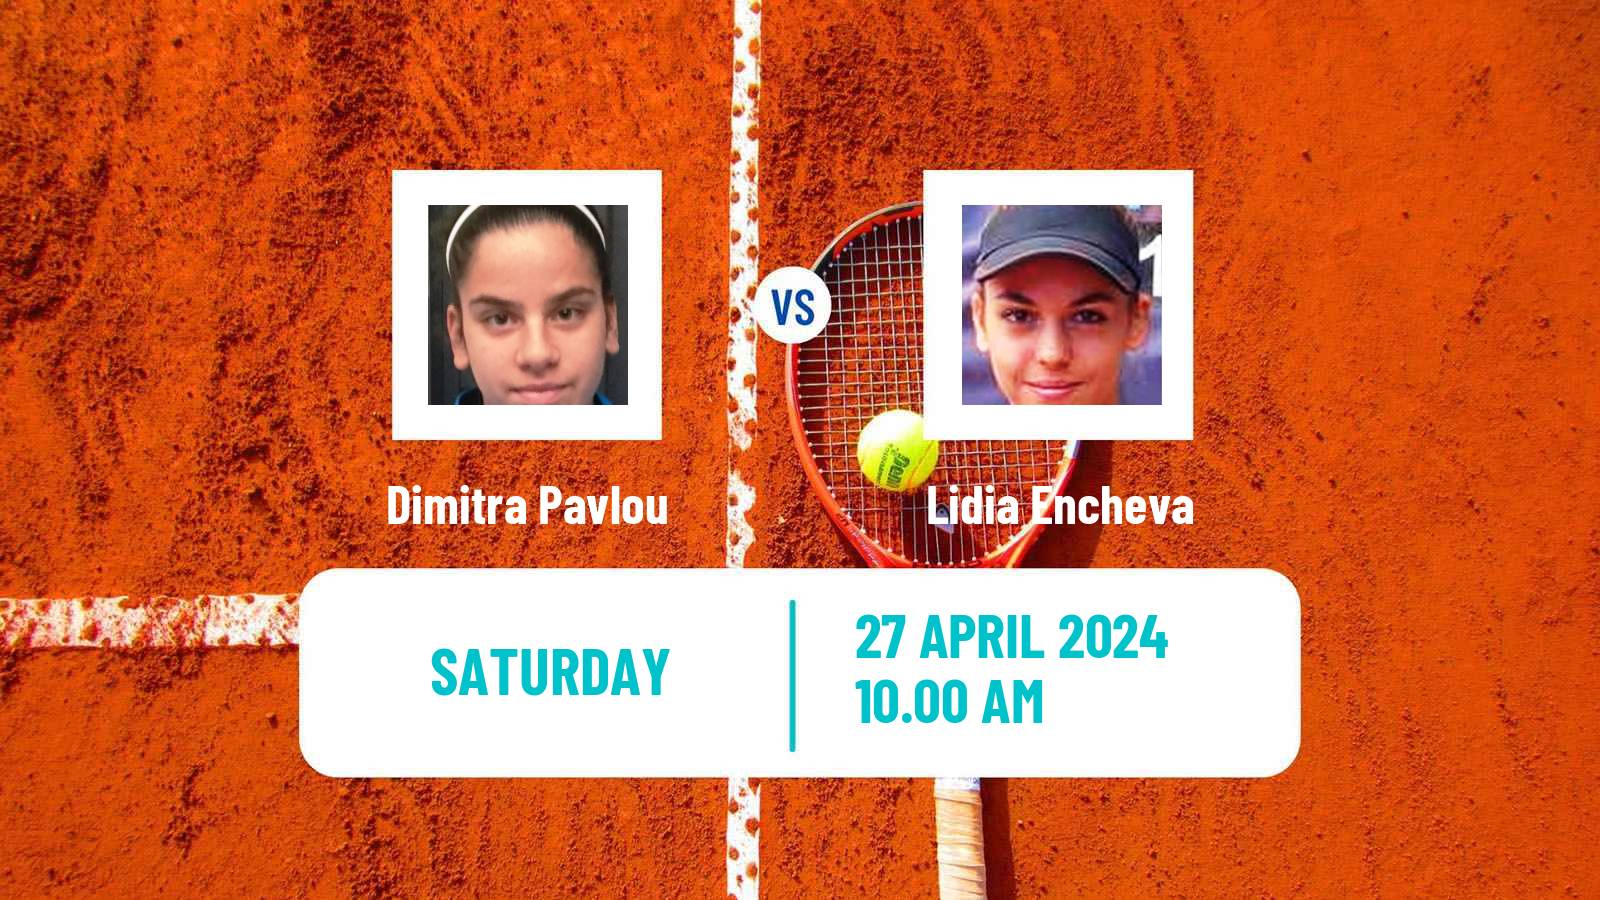 Tennis ITF W15 Kursumlijska Banja 2 Women Dimitra Pavlou - Lidia Encheva